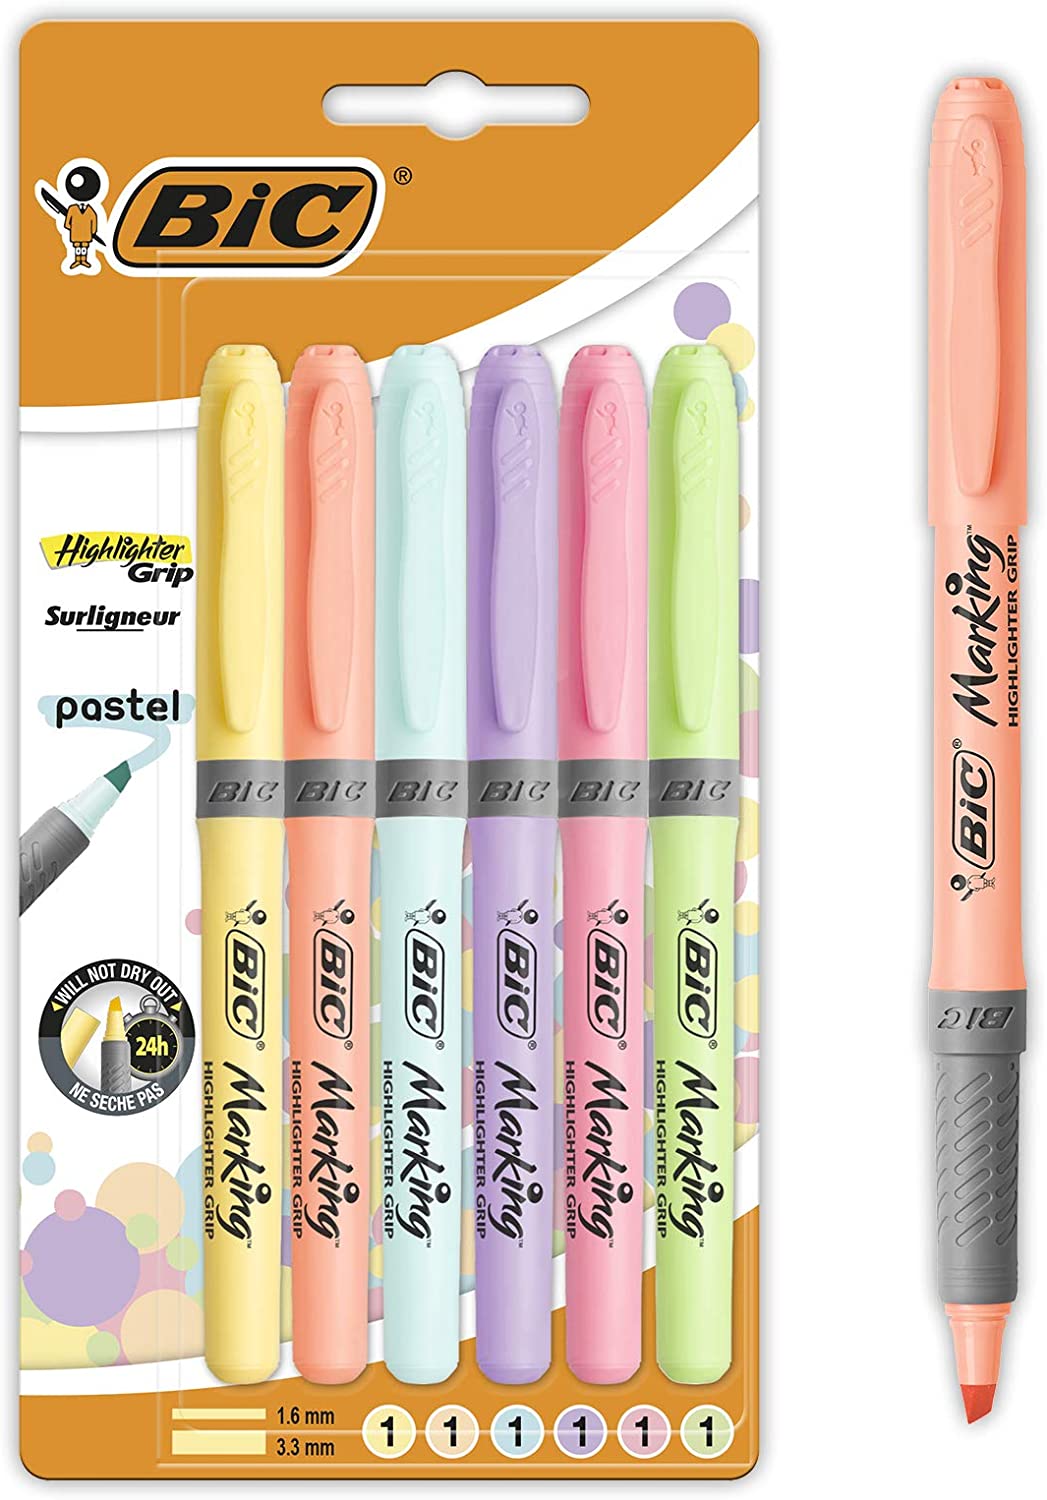 Bic Highlighter Grip Pack de 6 Marcadores Fluorescentes Pastel - Tinta con Base de Agua - Punta Biselada - Trazo entre 1.60 y 3.30mm - Colores Surtidos